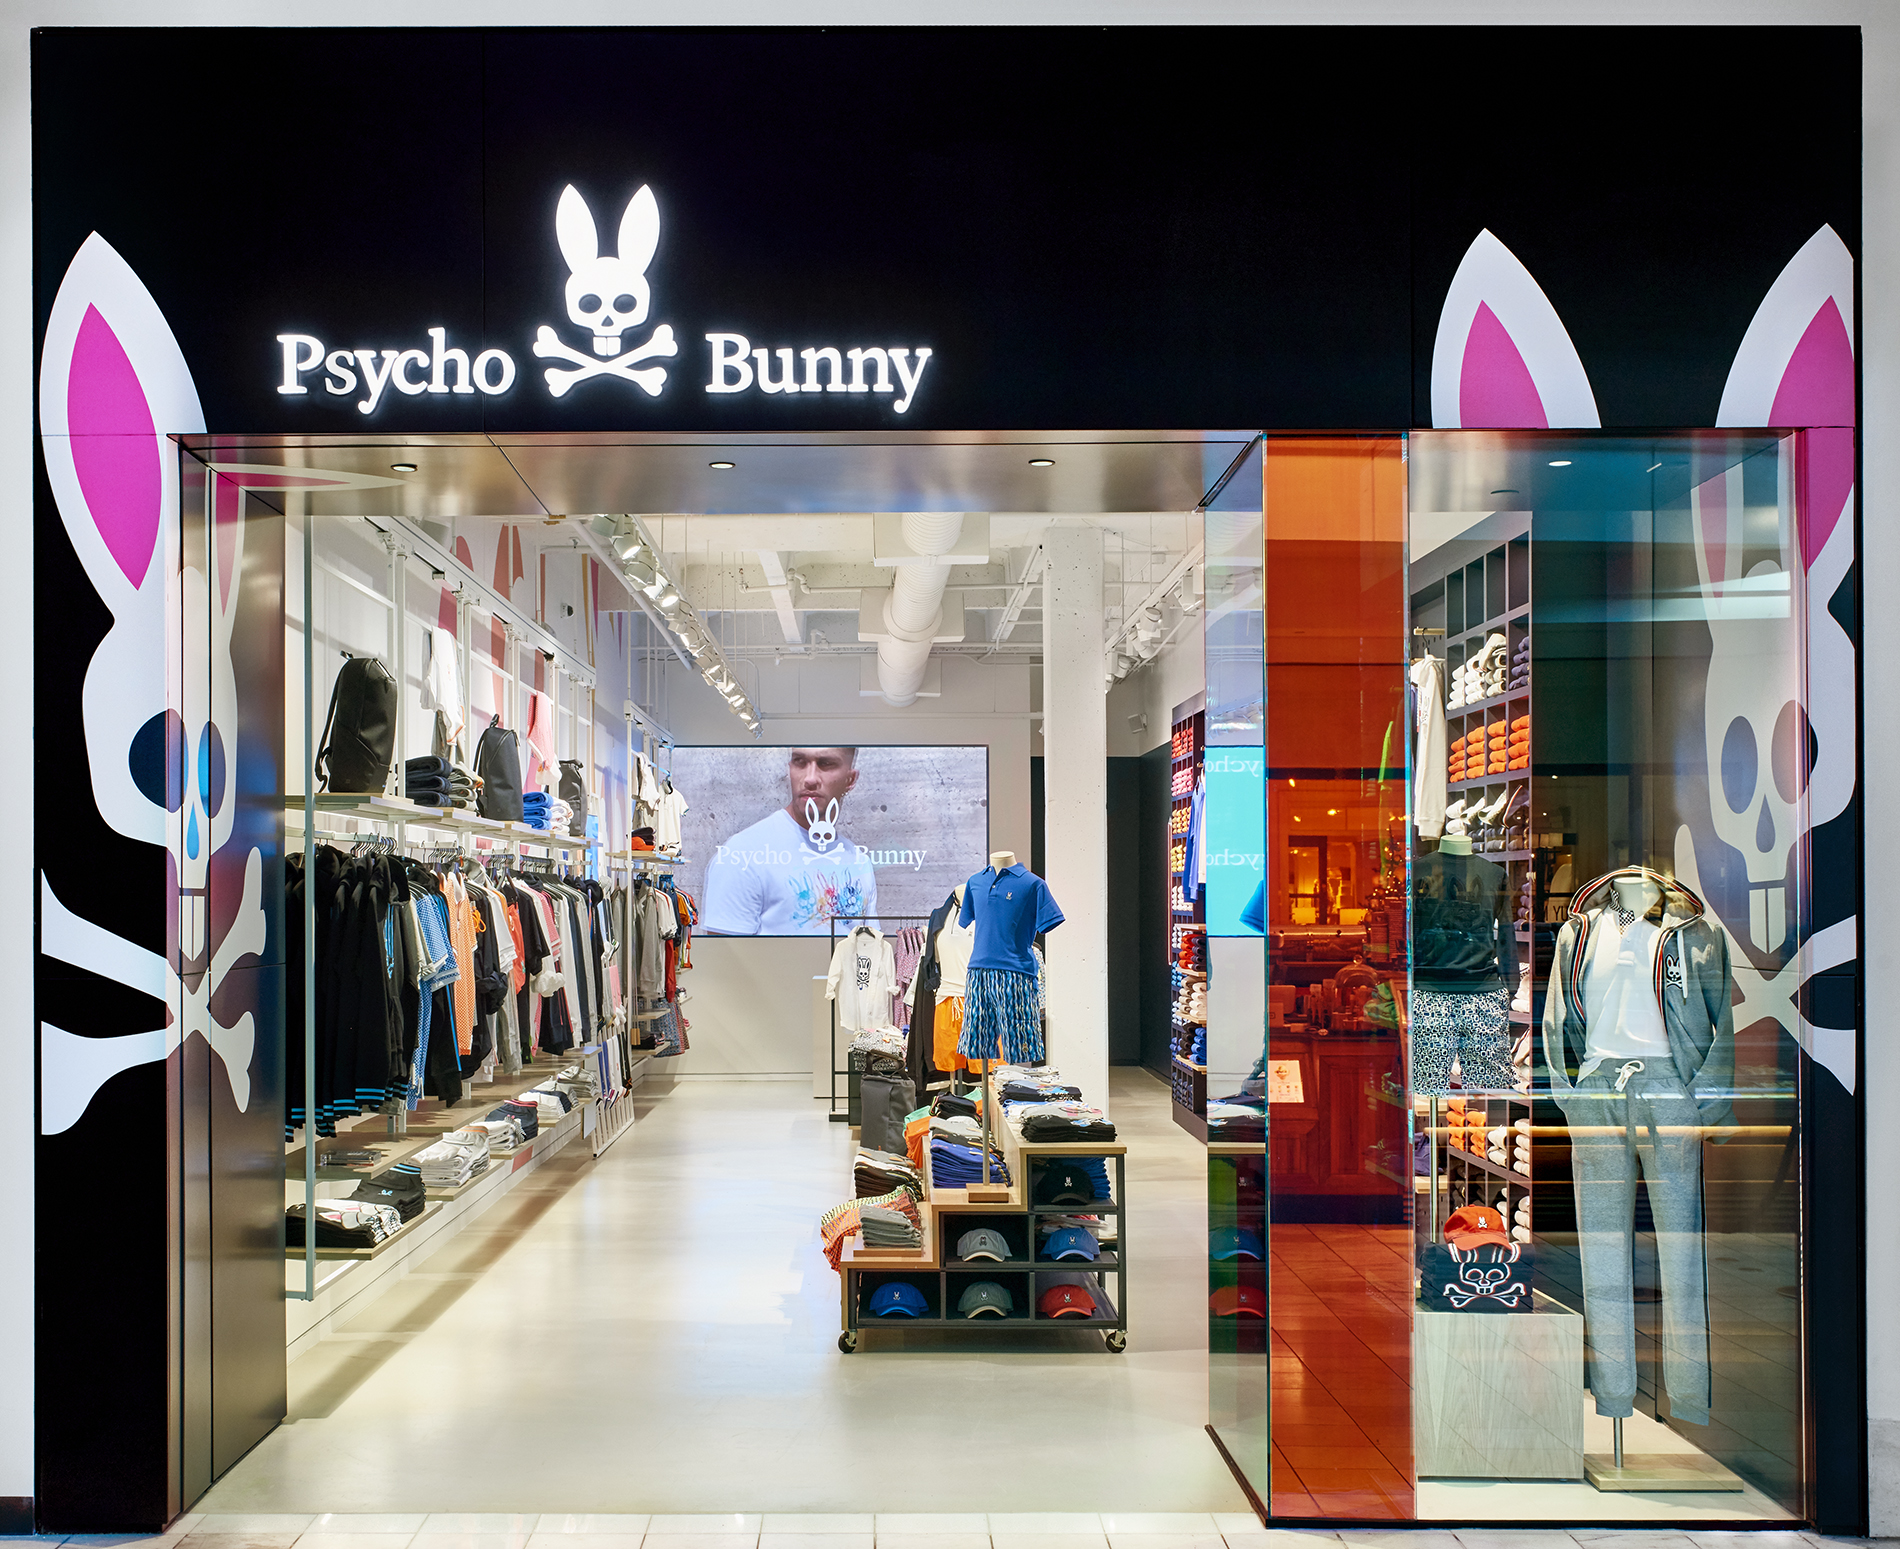 Psycho Bunny Implements iGotcha Media Digital Signage Applications at ...